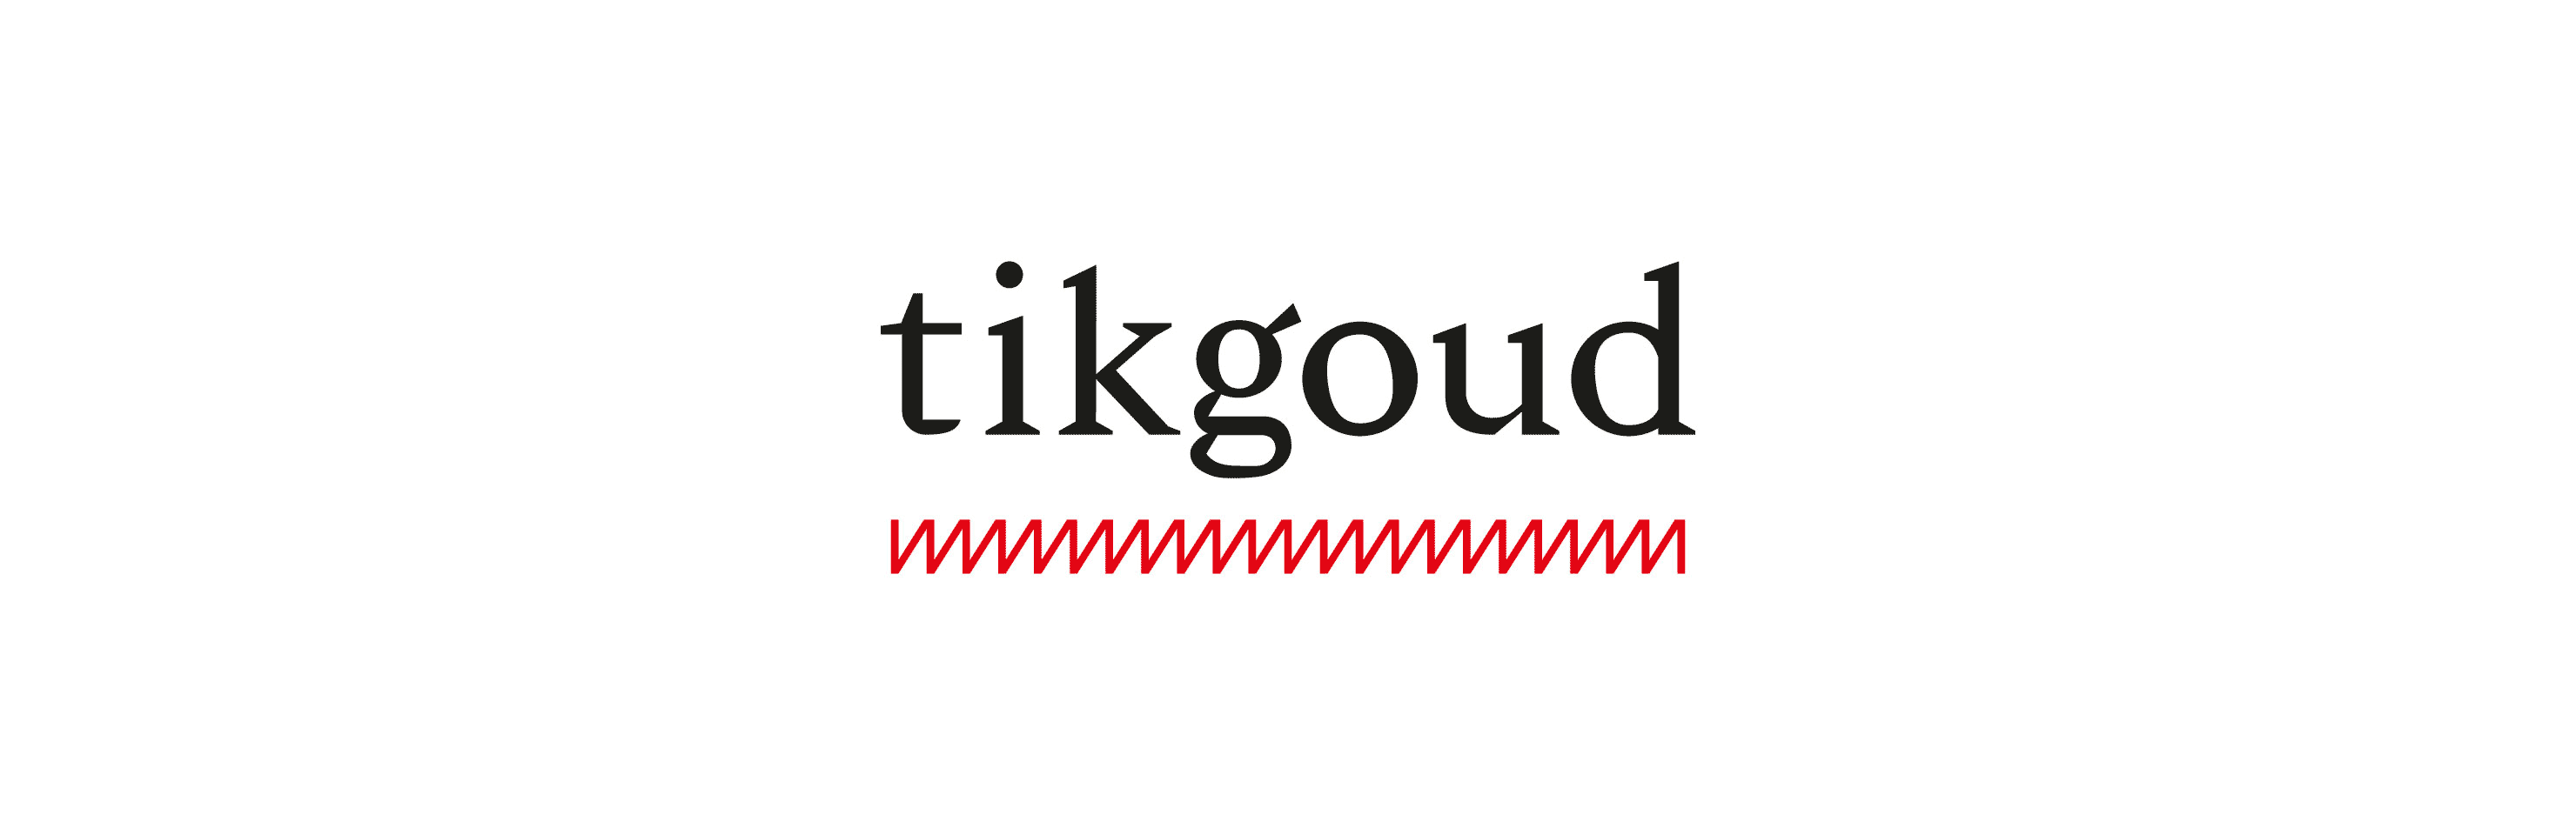 tikgoud 2 logo's